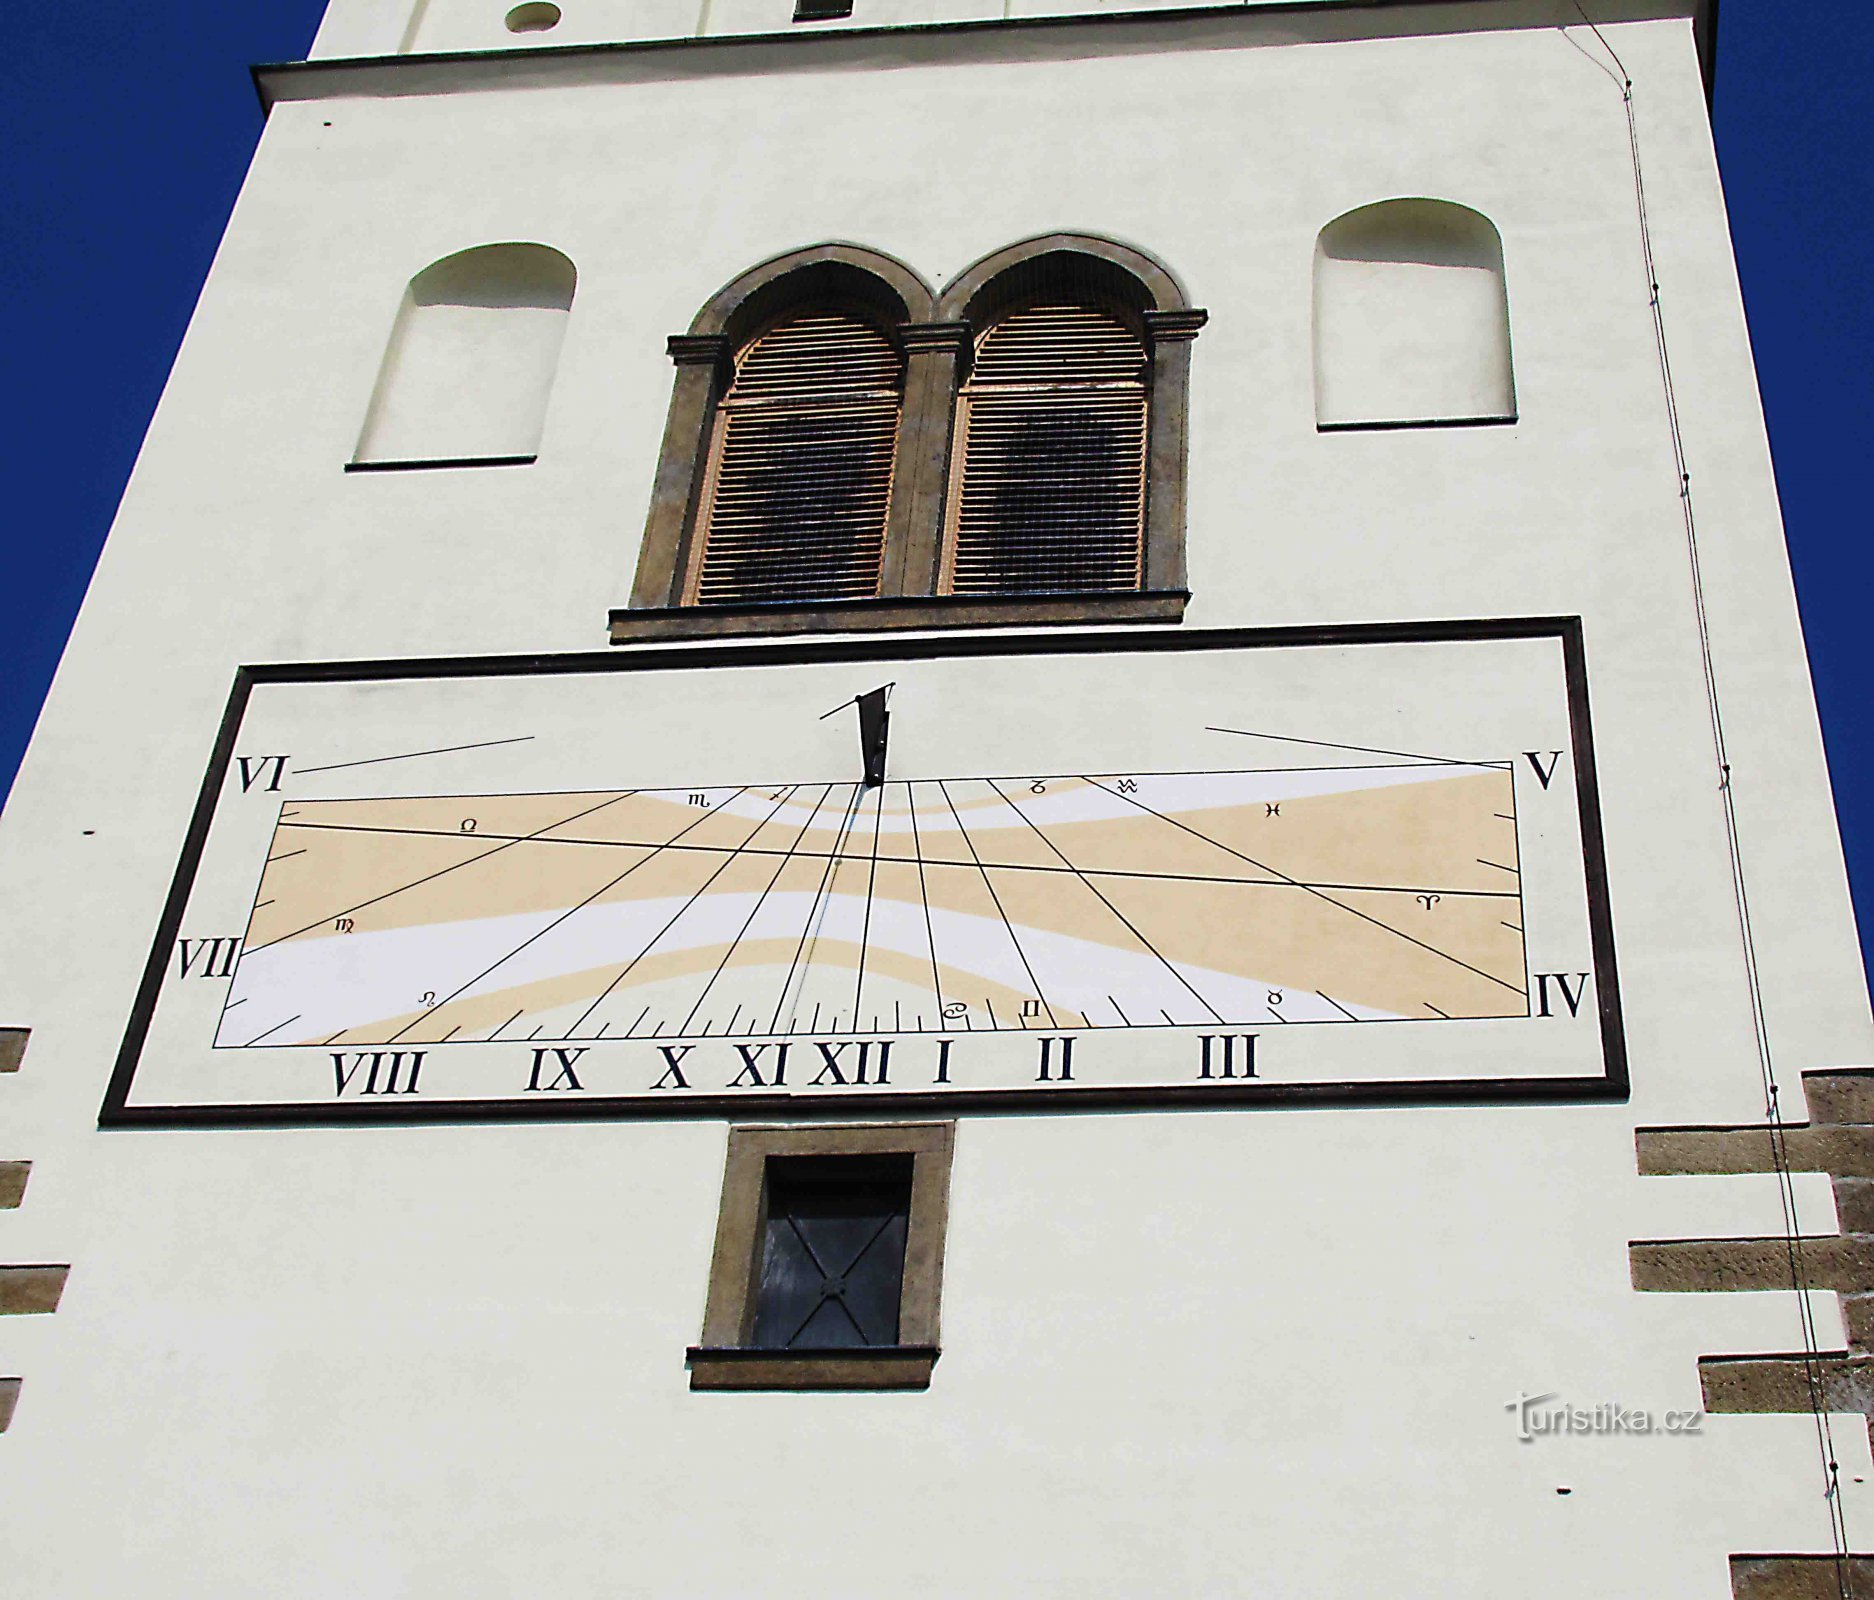 Ηλιακό ρολόι - αξιοθέατο στο Lipník nad Bečvou